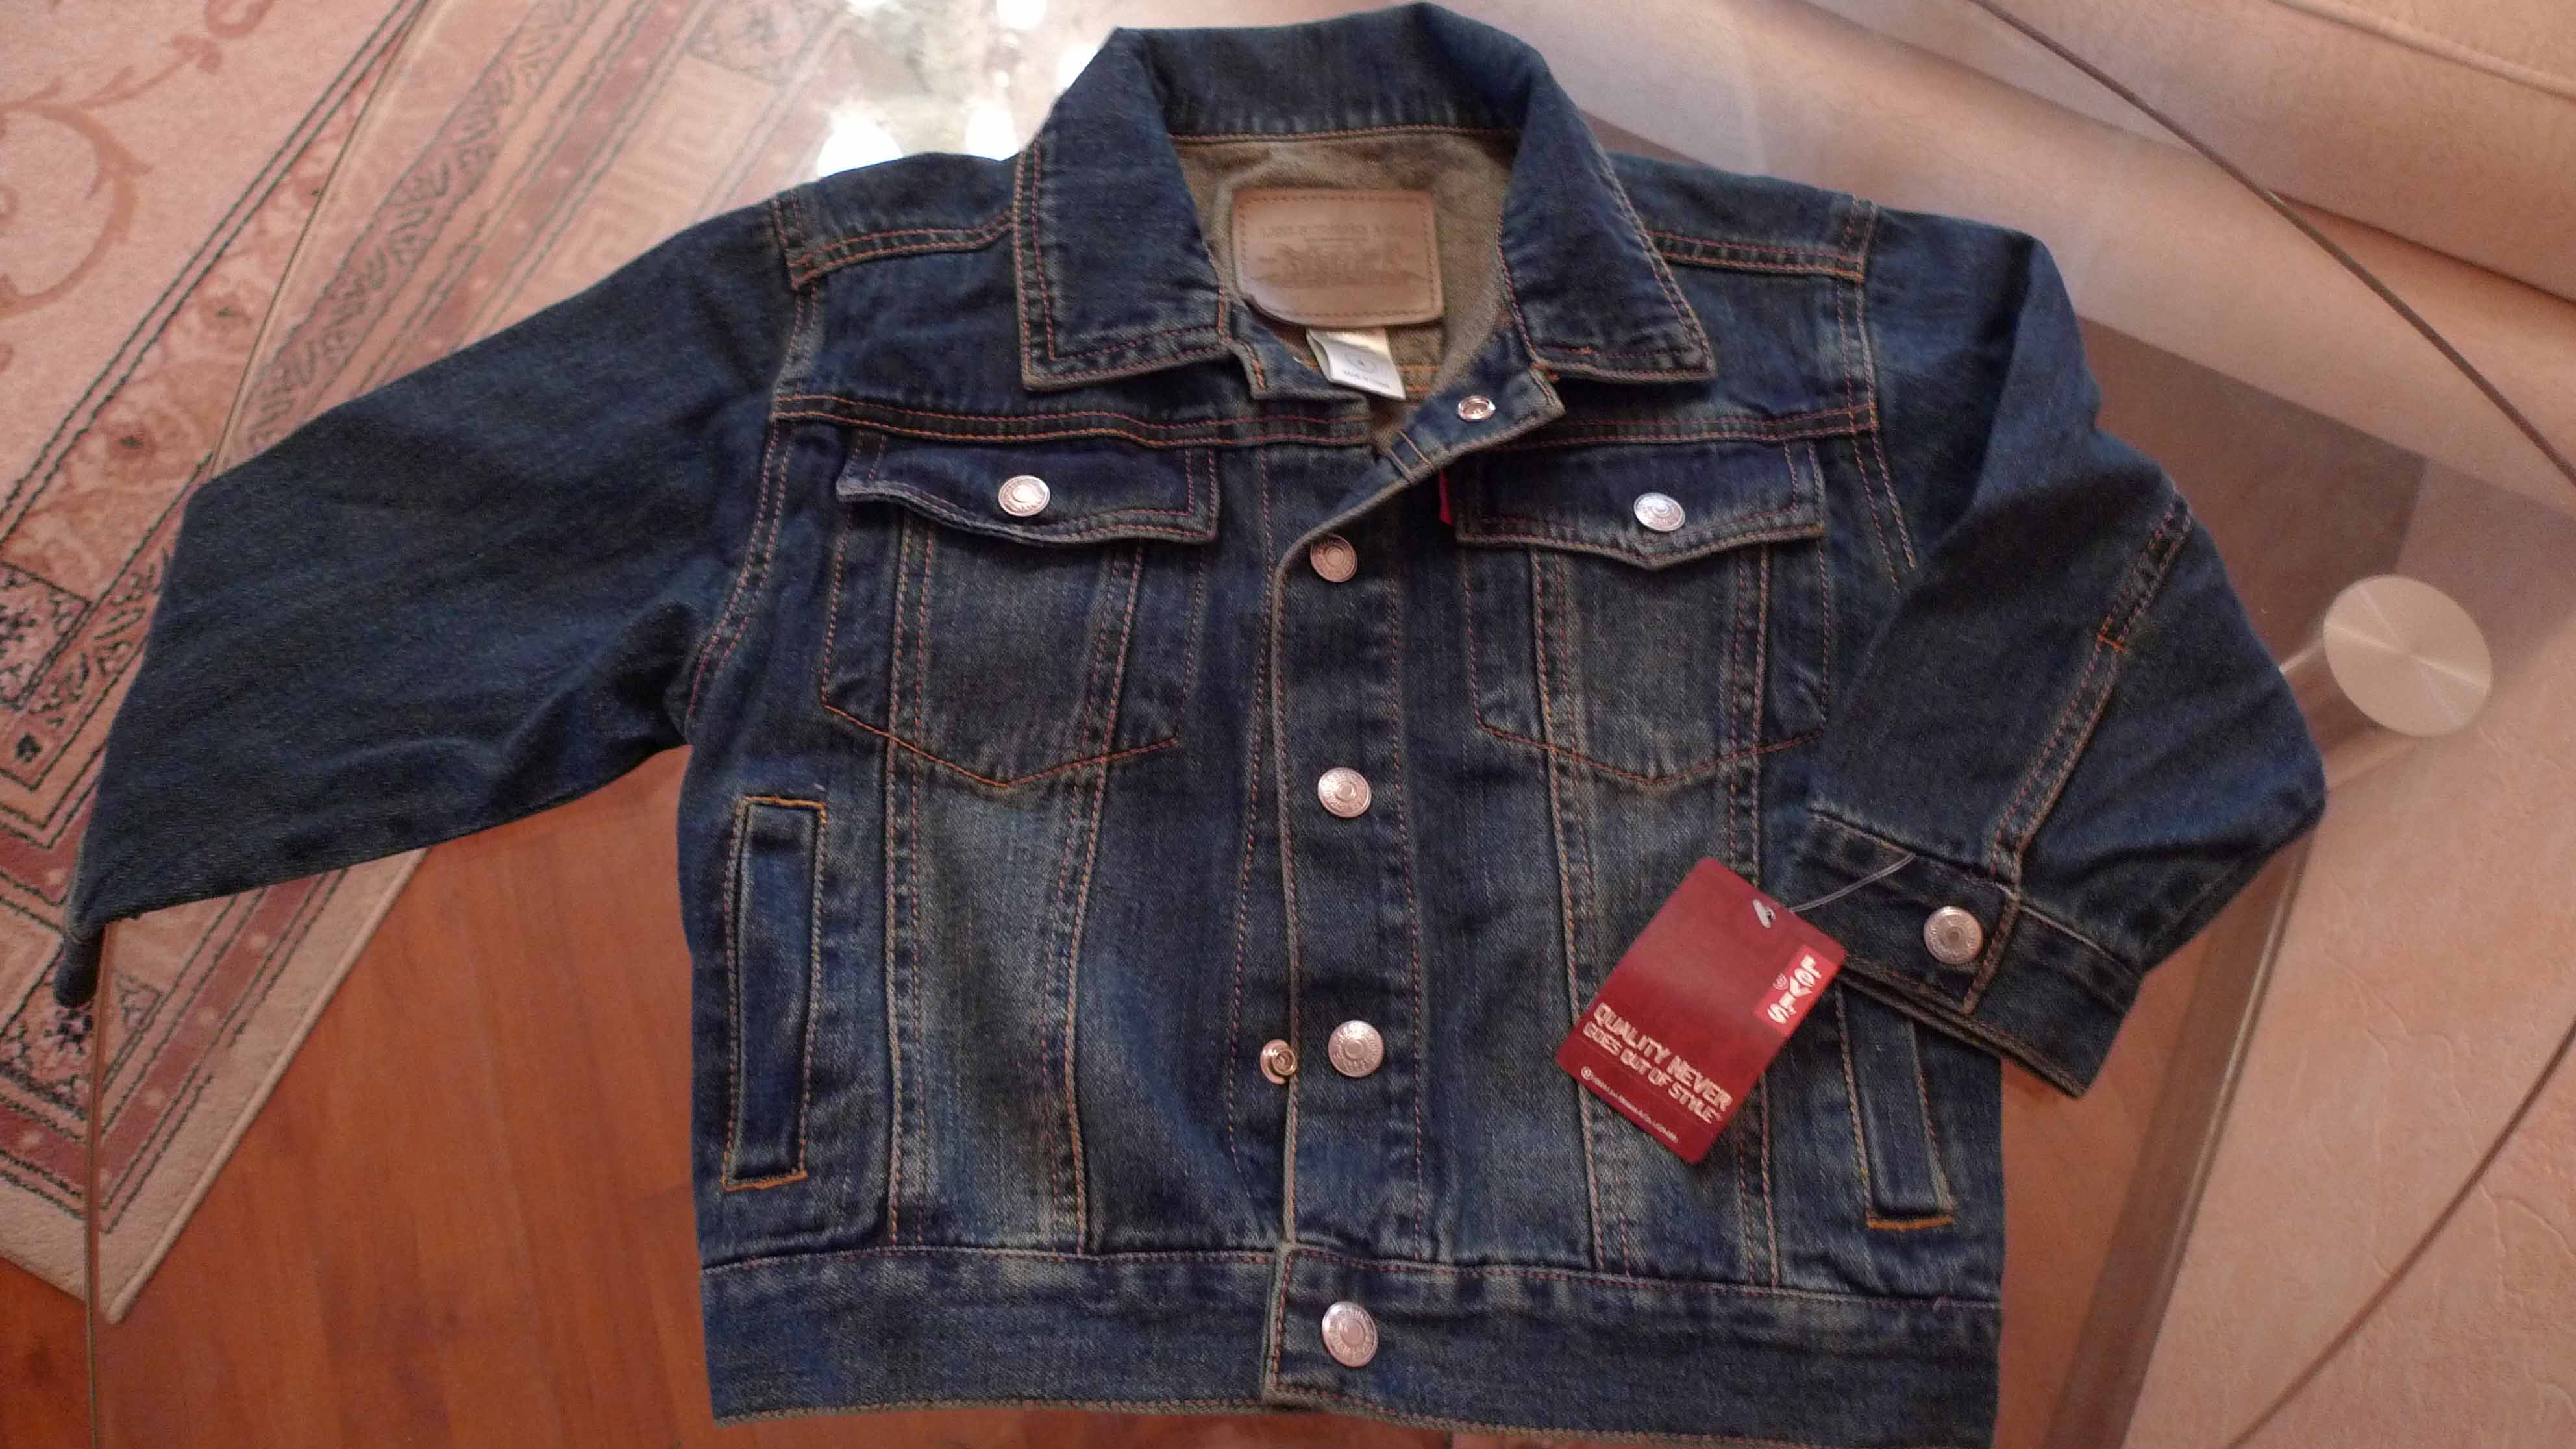 джинсовая куртка Levi's на мальчика
размер 4года
не на худеньких
цена 850р